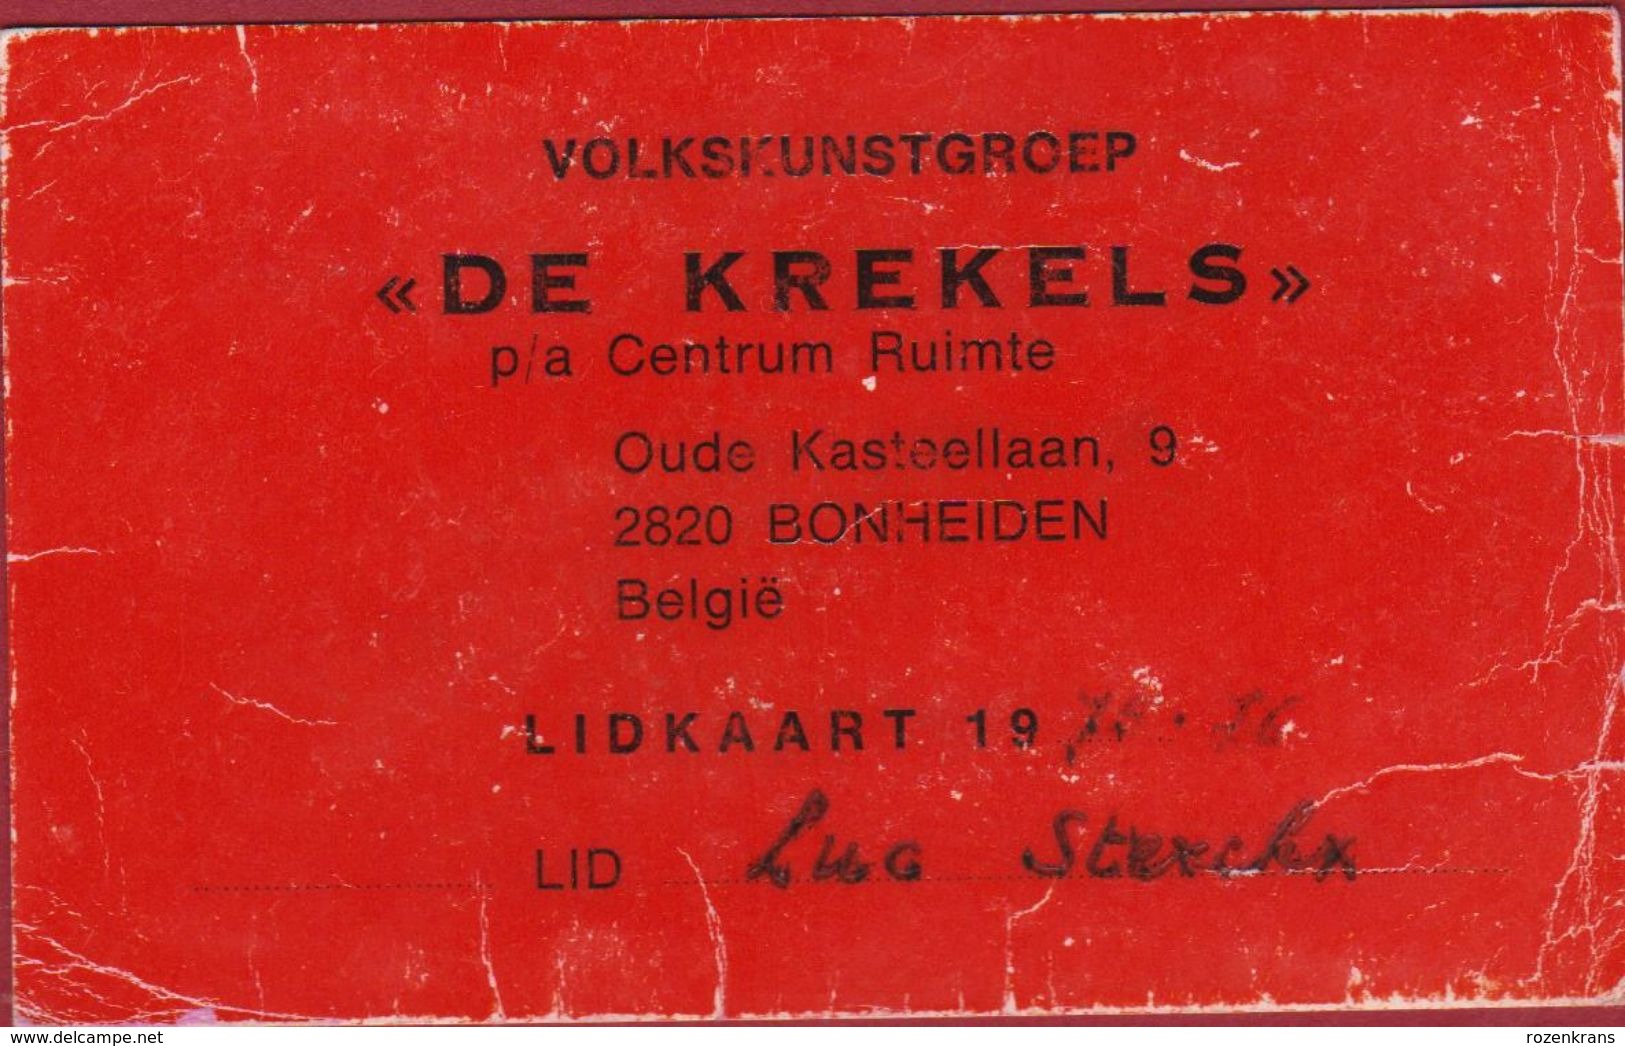 Lidkaart Volkskunstgroep De Krekels Bomheiden 1975 1976 - Tickets D'entrée